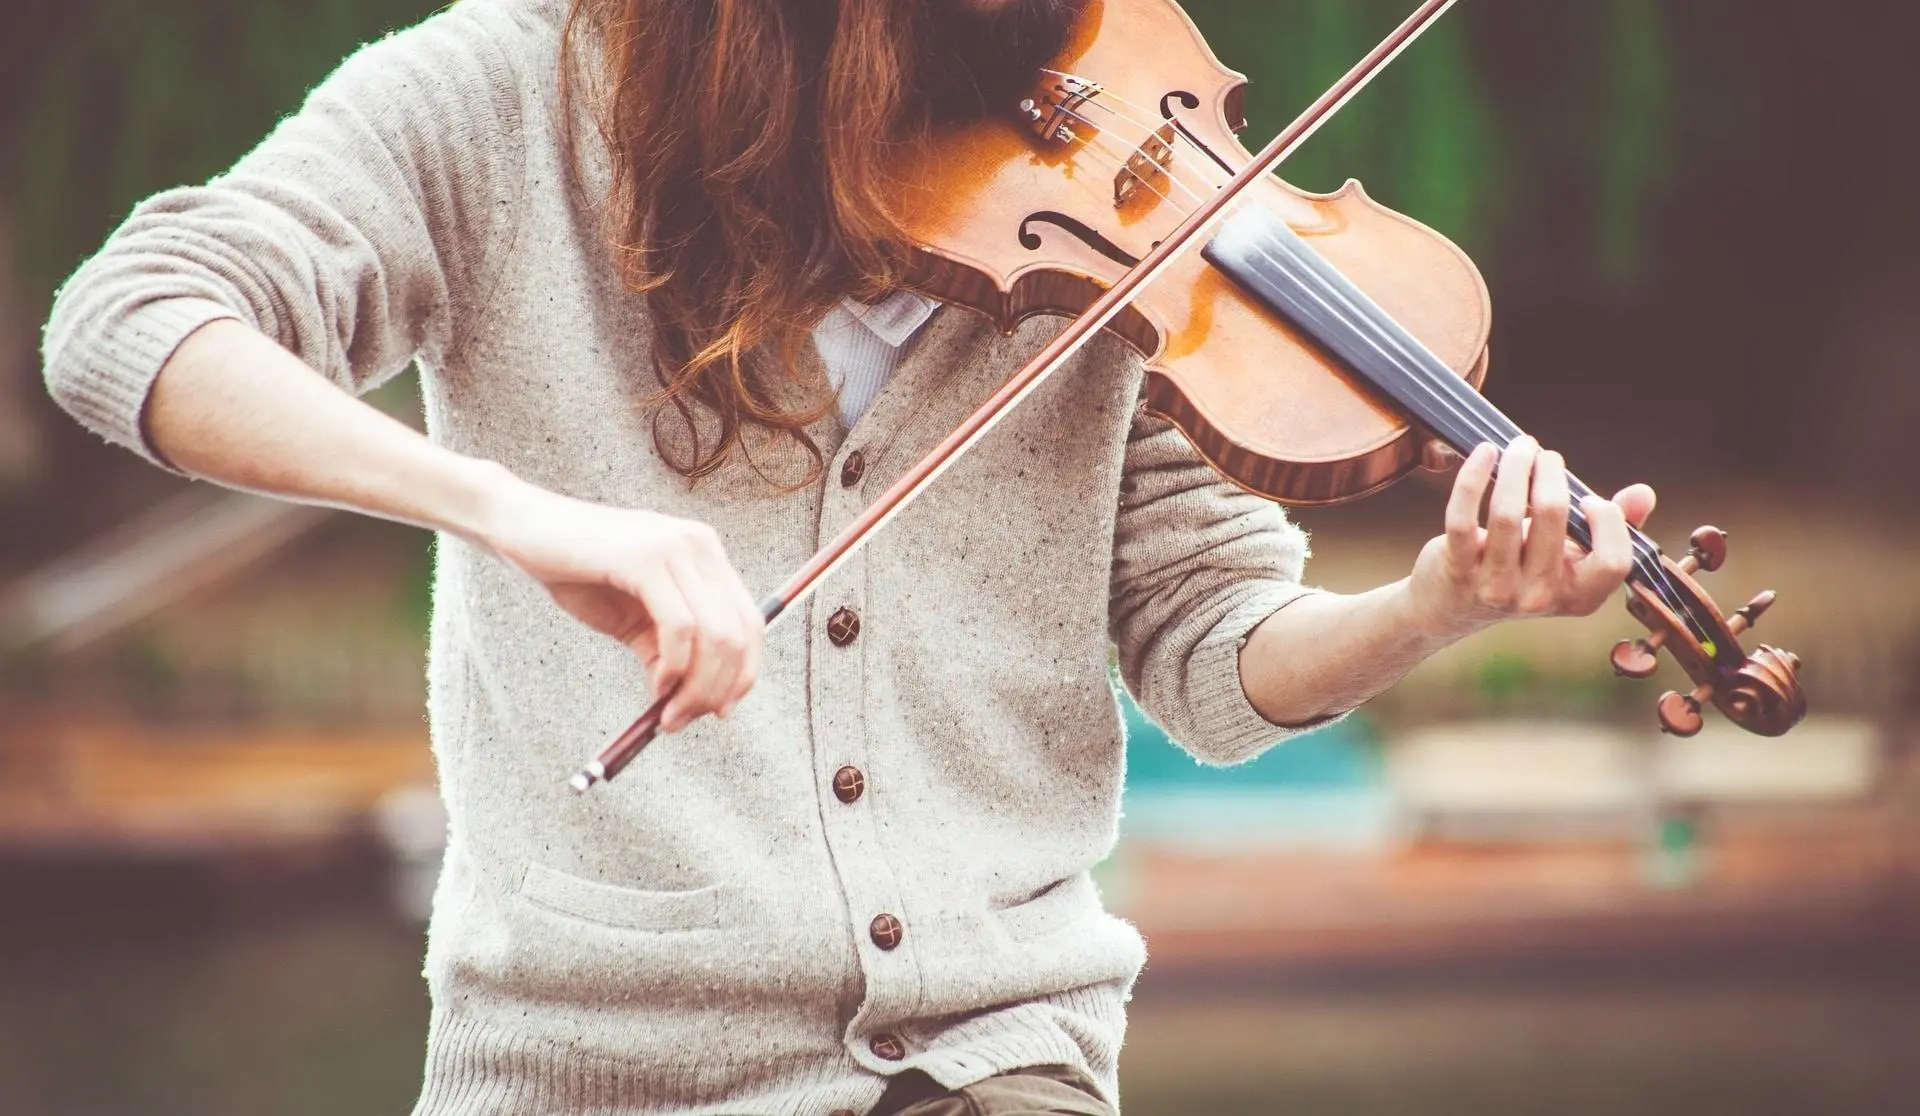 se puede aprender violin solo - Qué tan difícil es tocar el violín